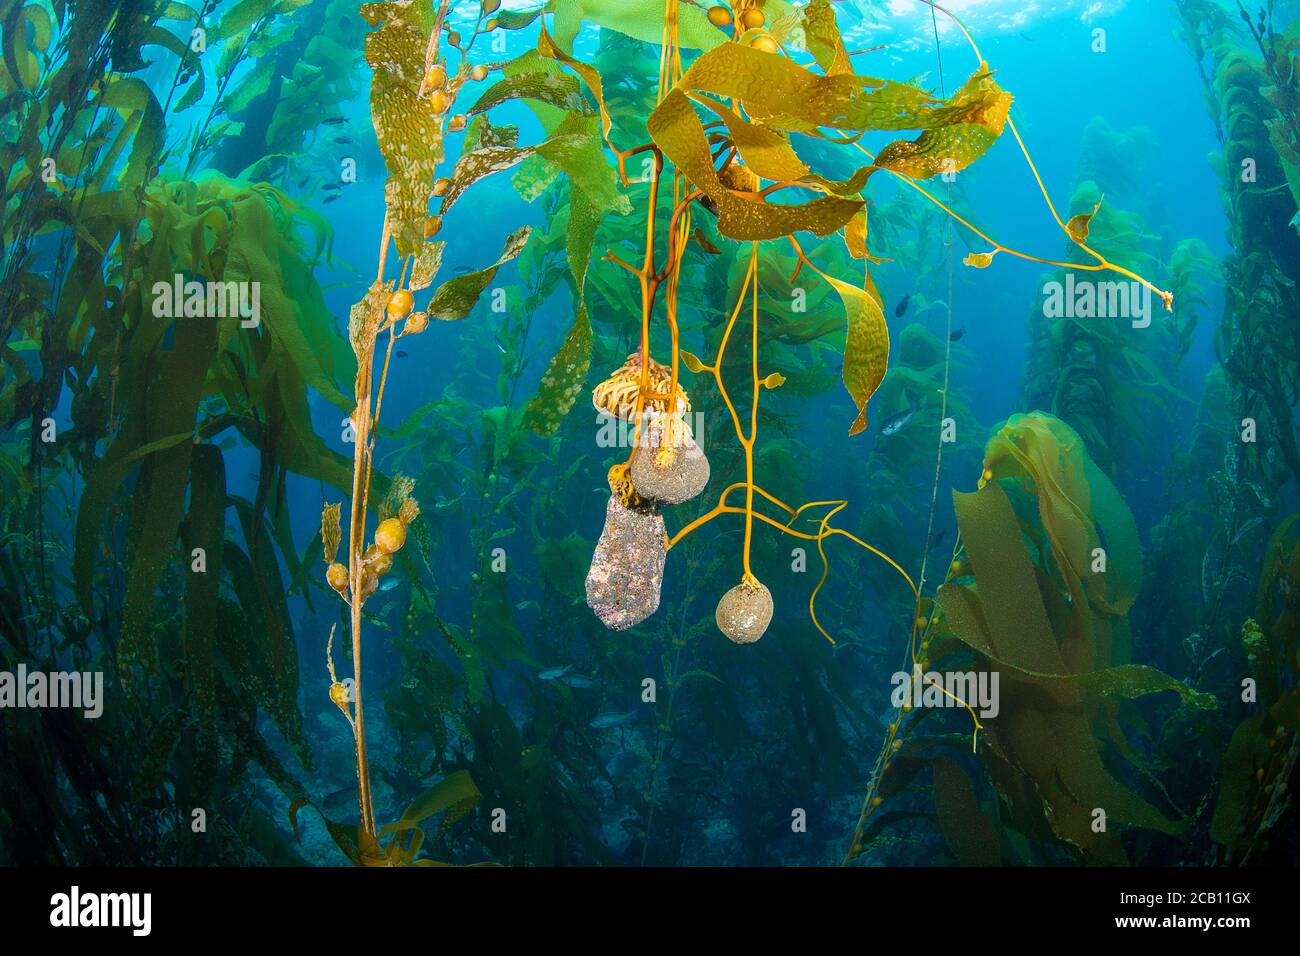 Il kelp gigante, Macrocystis pirifera, si ancora alle rocce sul fondo. Man mano che cresce e le camere d'aria che sollevano i trefoli moltiplicano la volontà del kelp Foto Stock